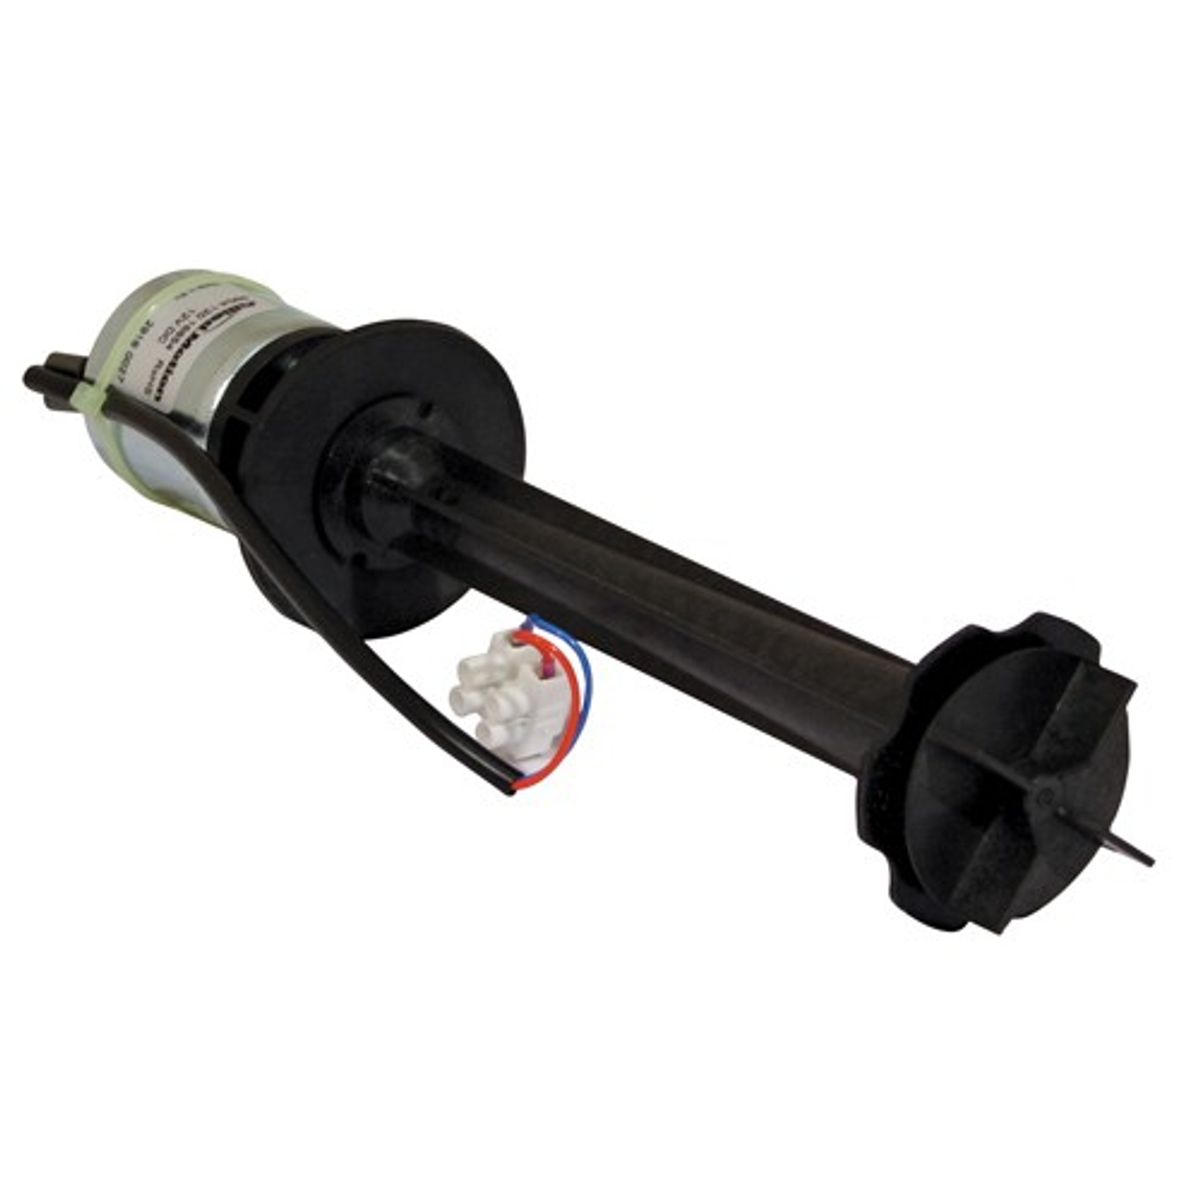 Alde Heating Circulation Pump - Compact - 12 Volt - 2928-420